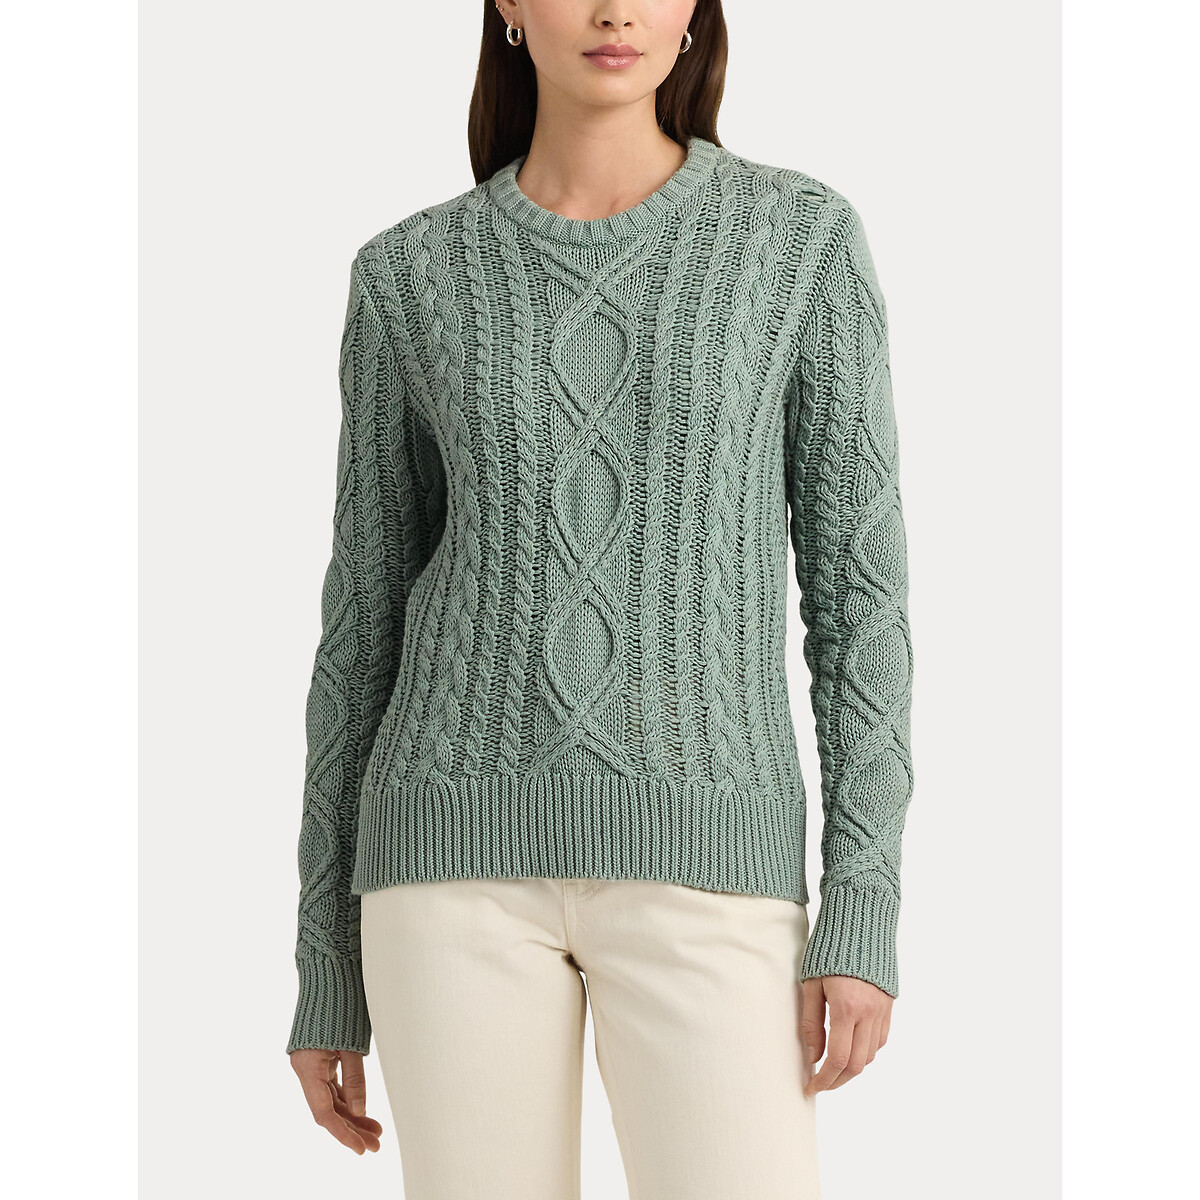 Пуловер с витым узором и круглым вырезом из хлопкового трикотажа HILVAITE XL зеленый пуловер с v образным вырезом и витым узором xl синий